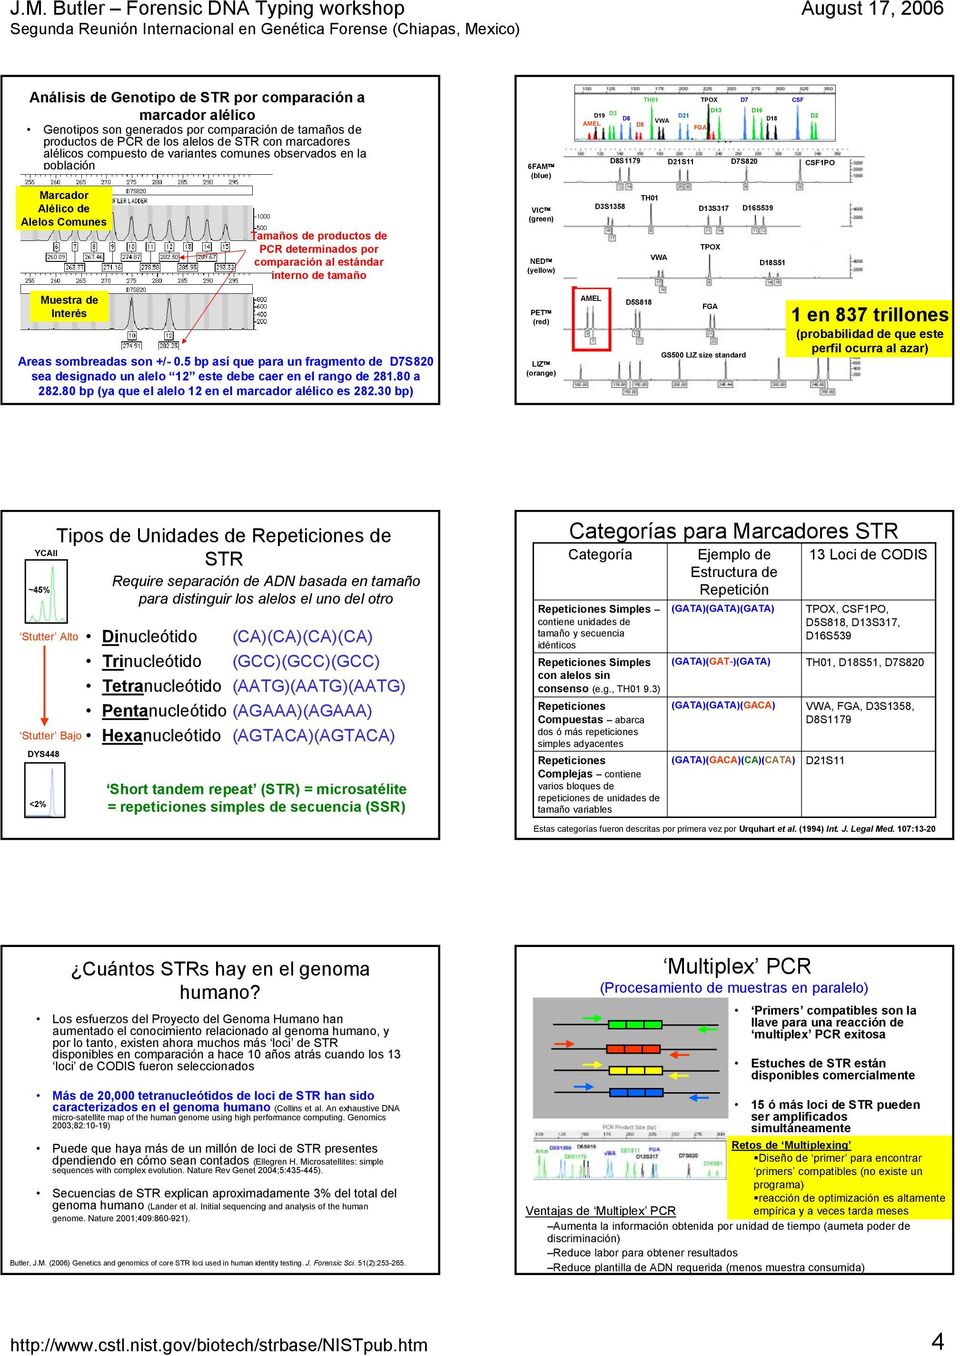 Tamaños de productos de PCR determinados por comparación al estándar interno de tamaño VIC (green) NED (yellow) D3S1358 D19S433 TH01 VWA D13S317 TPOX D16S539 D18S51 D2S1338 Muestra de Interés Areas